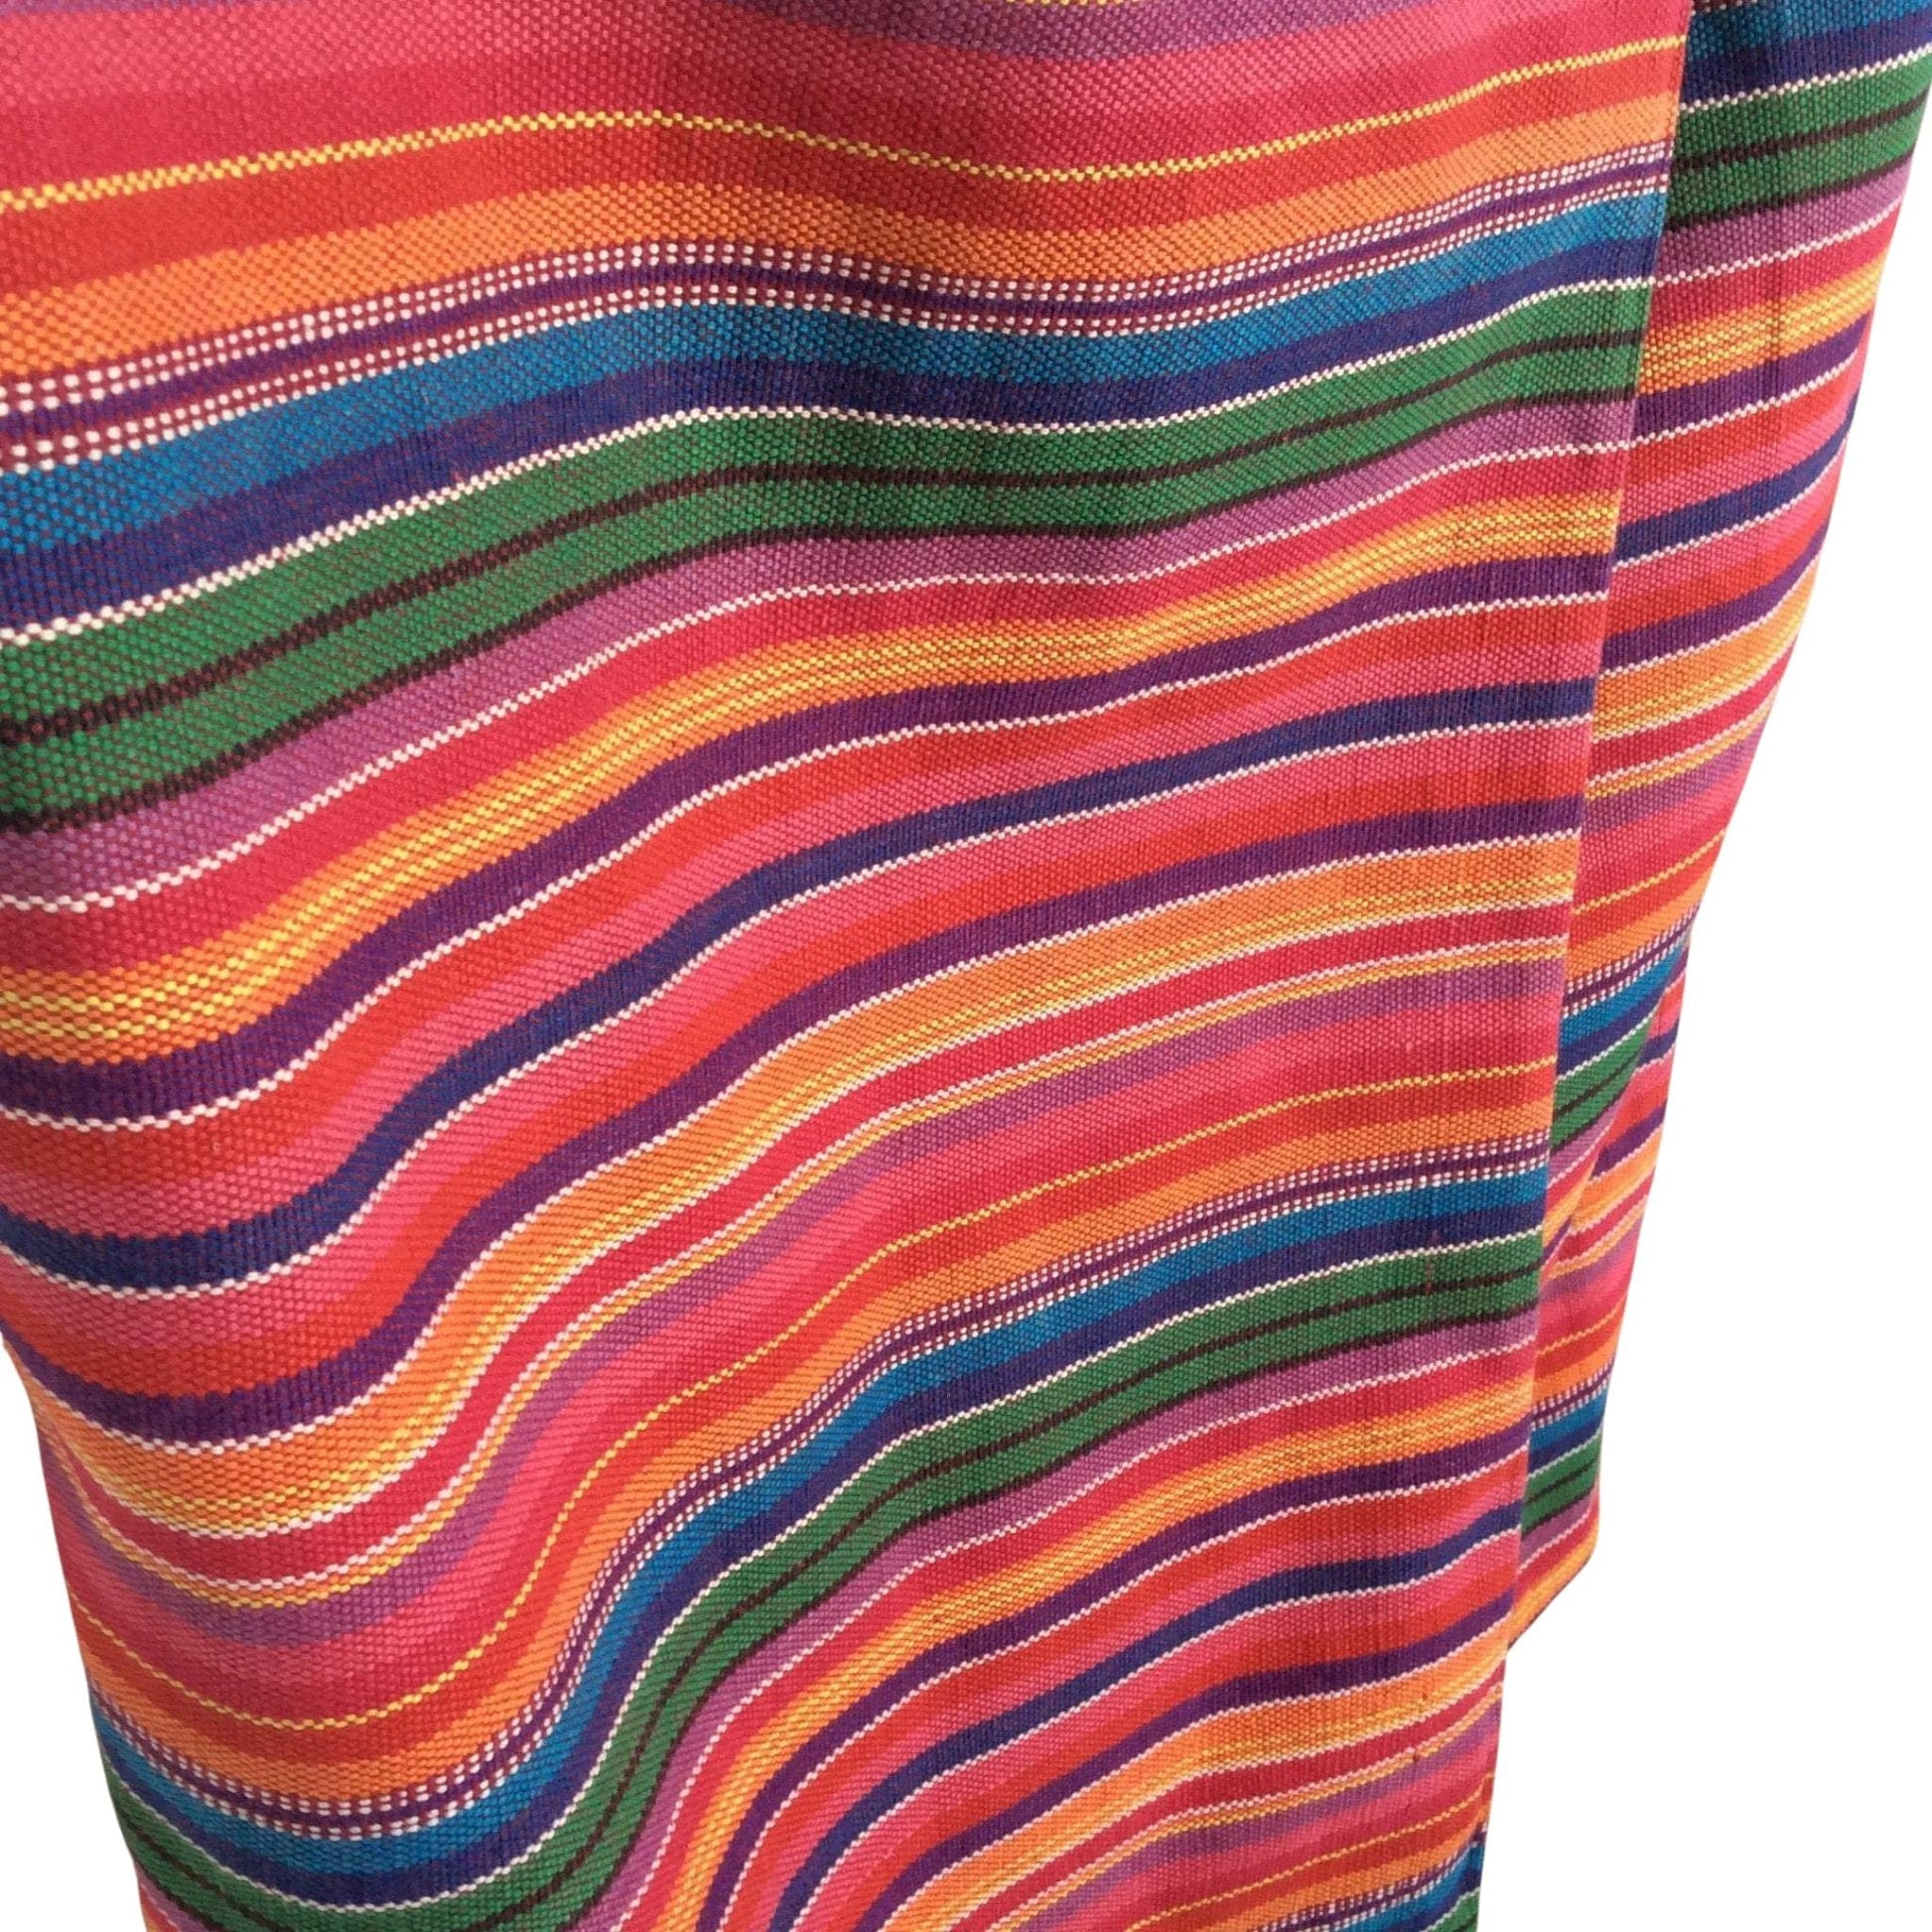 Serape Wrap Skirt Medium / Multi / Vintage - 1980s